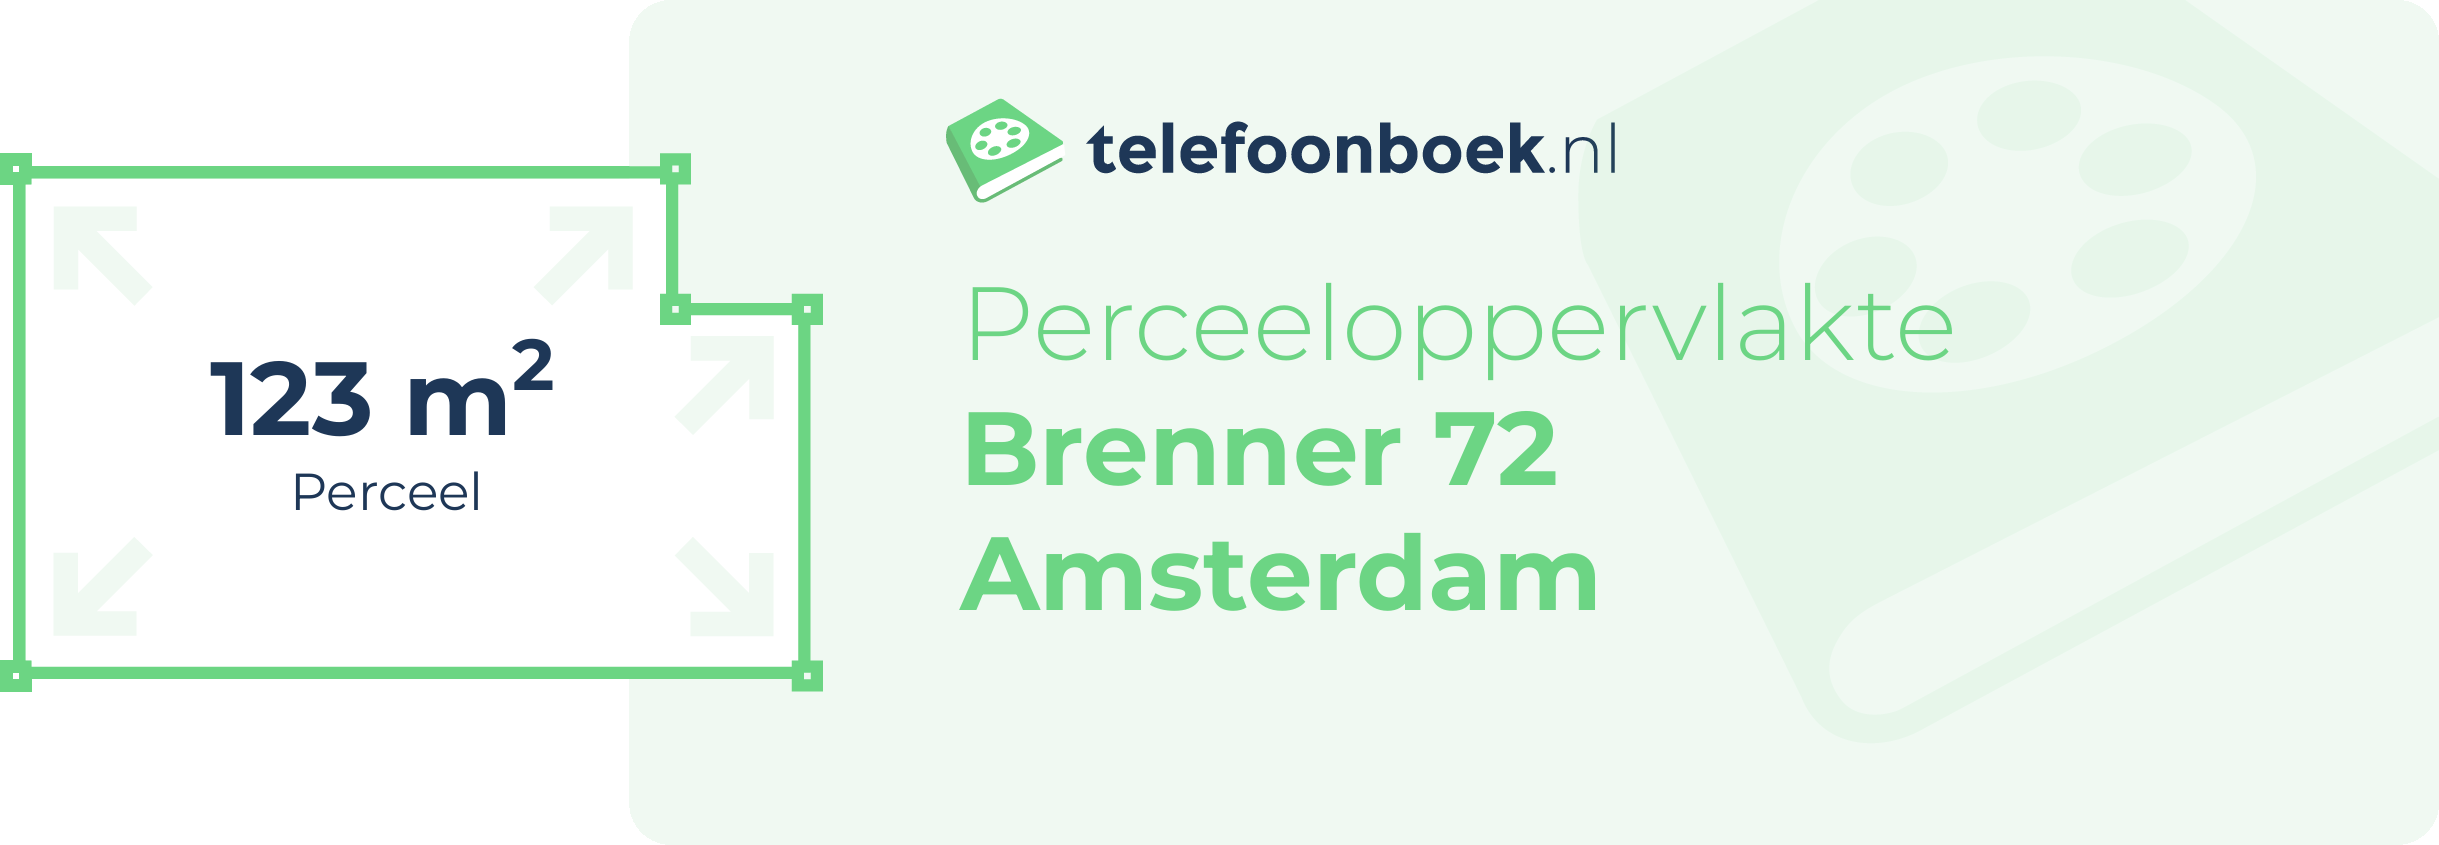 Perceeloppervlakte Brenner 72 Amsterdam